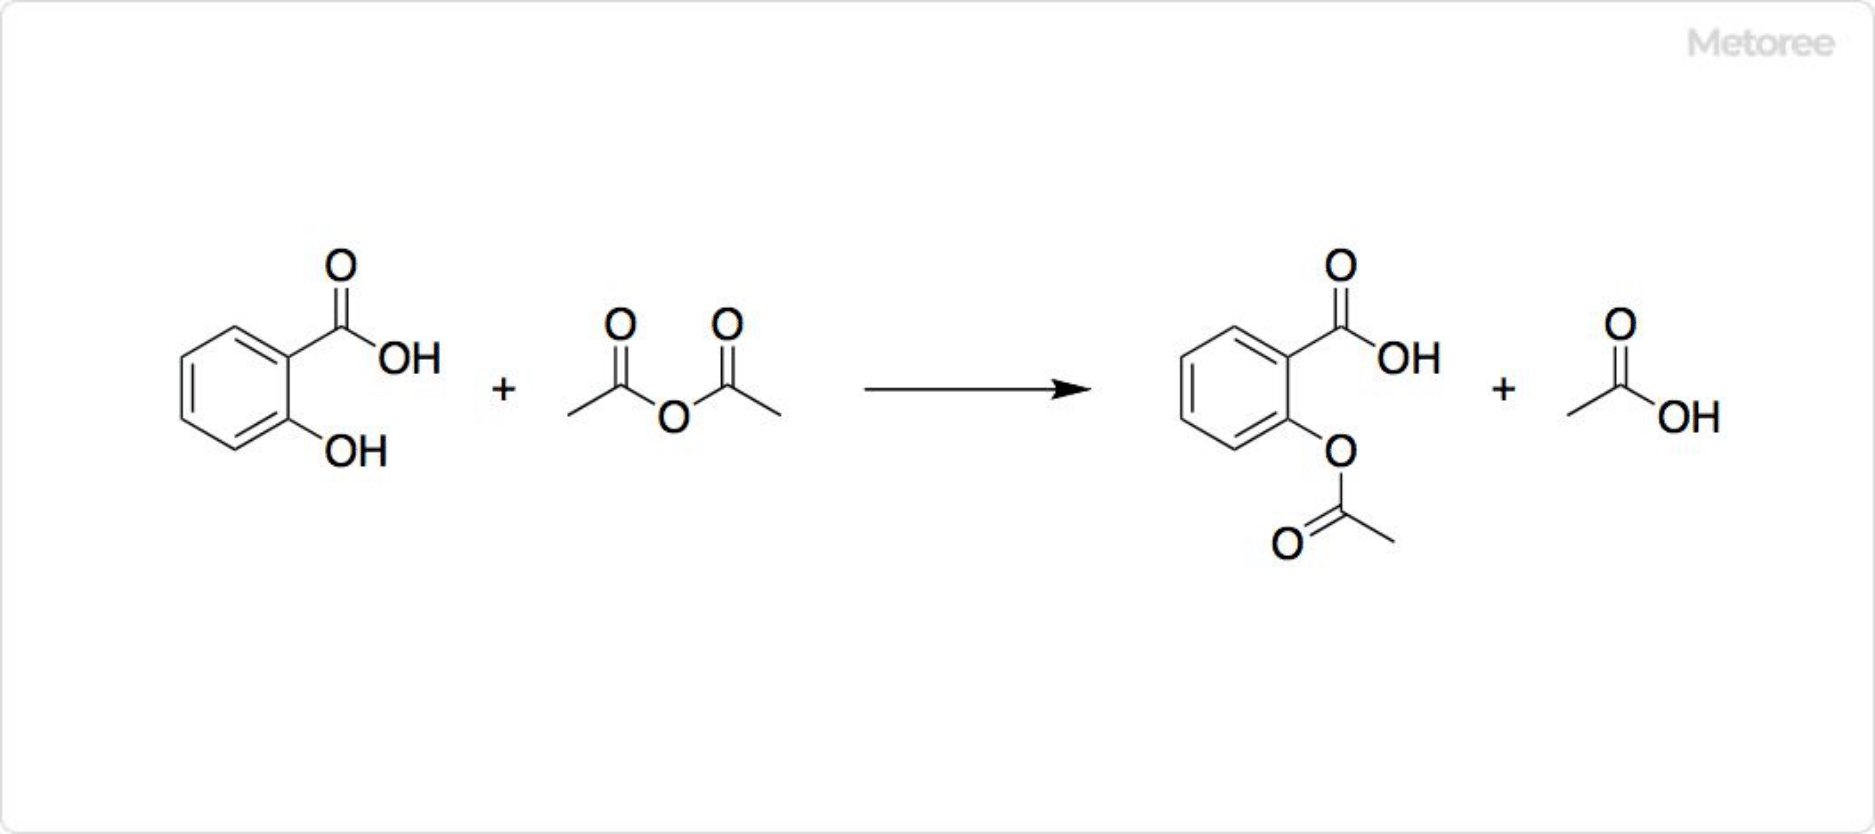 サリチル酸の反応